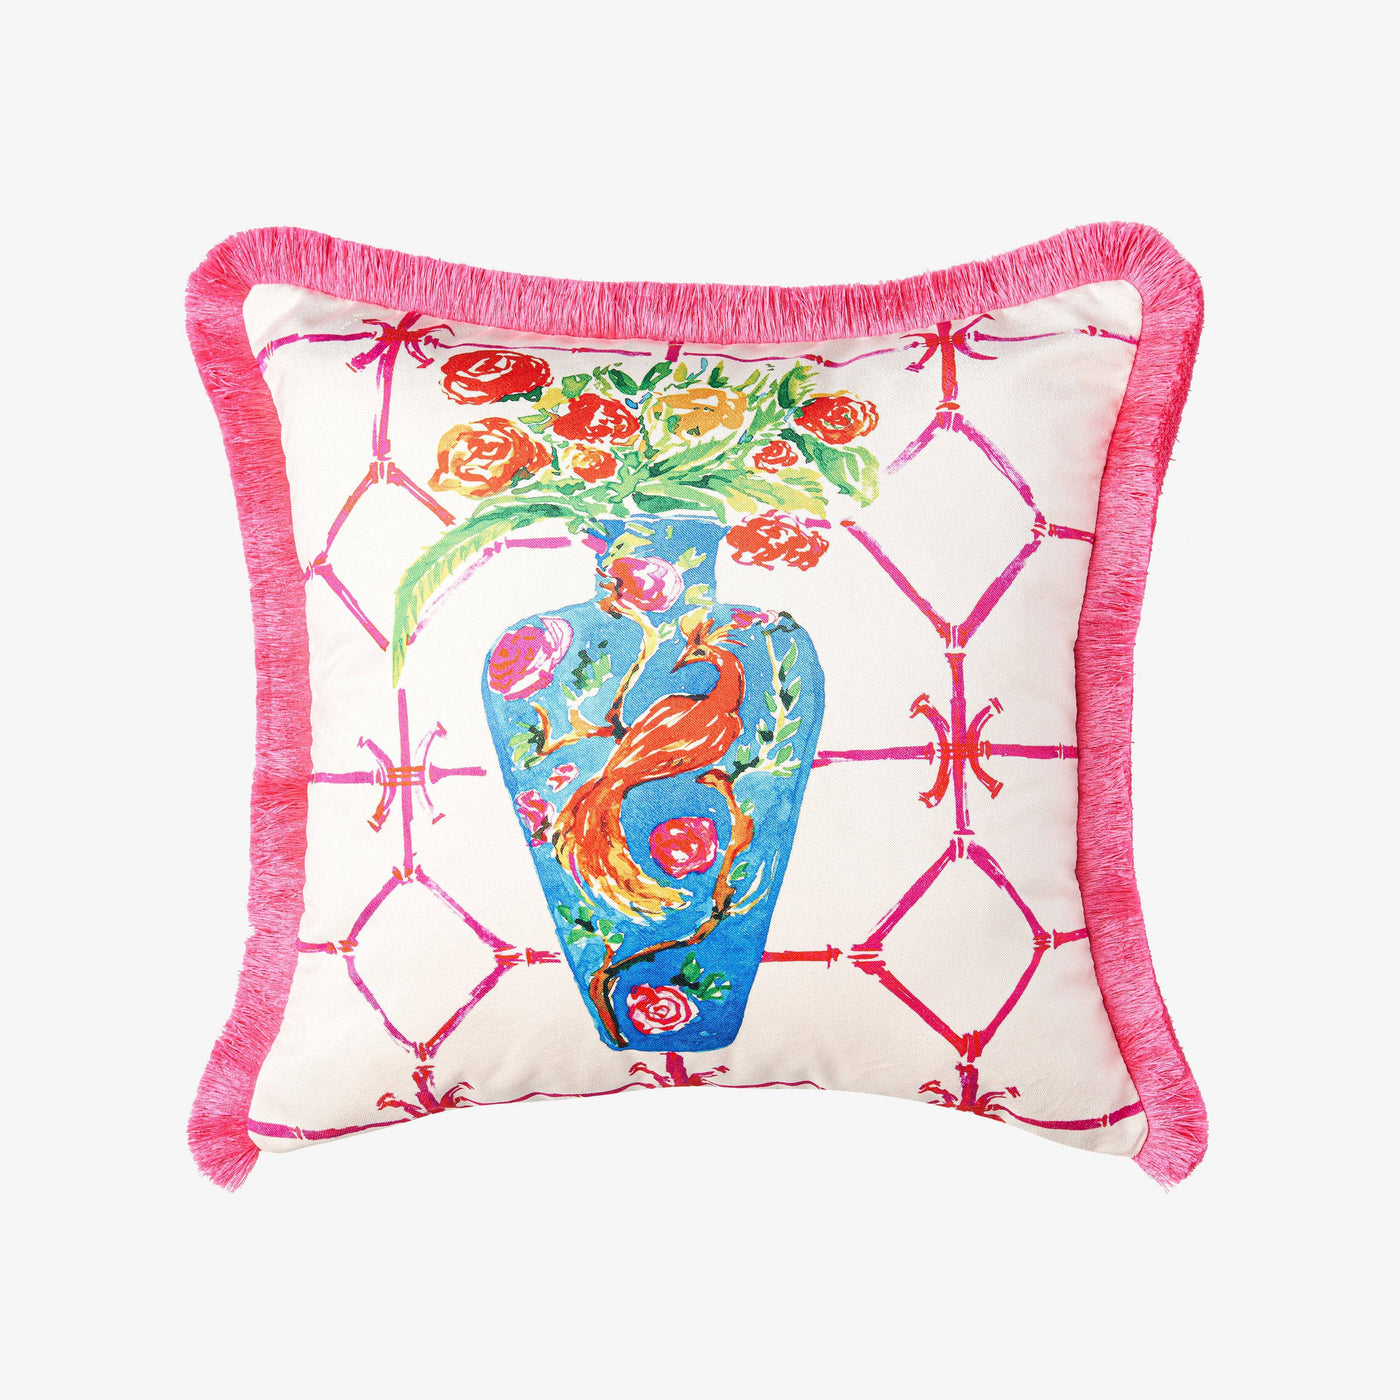 Herais Cushion Cover, Pink, 50x50cm 1